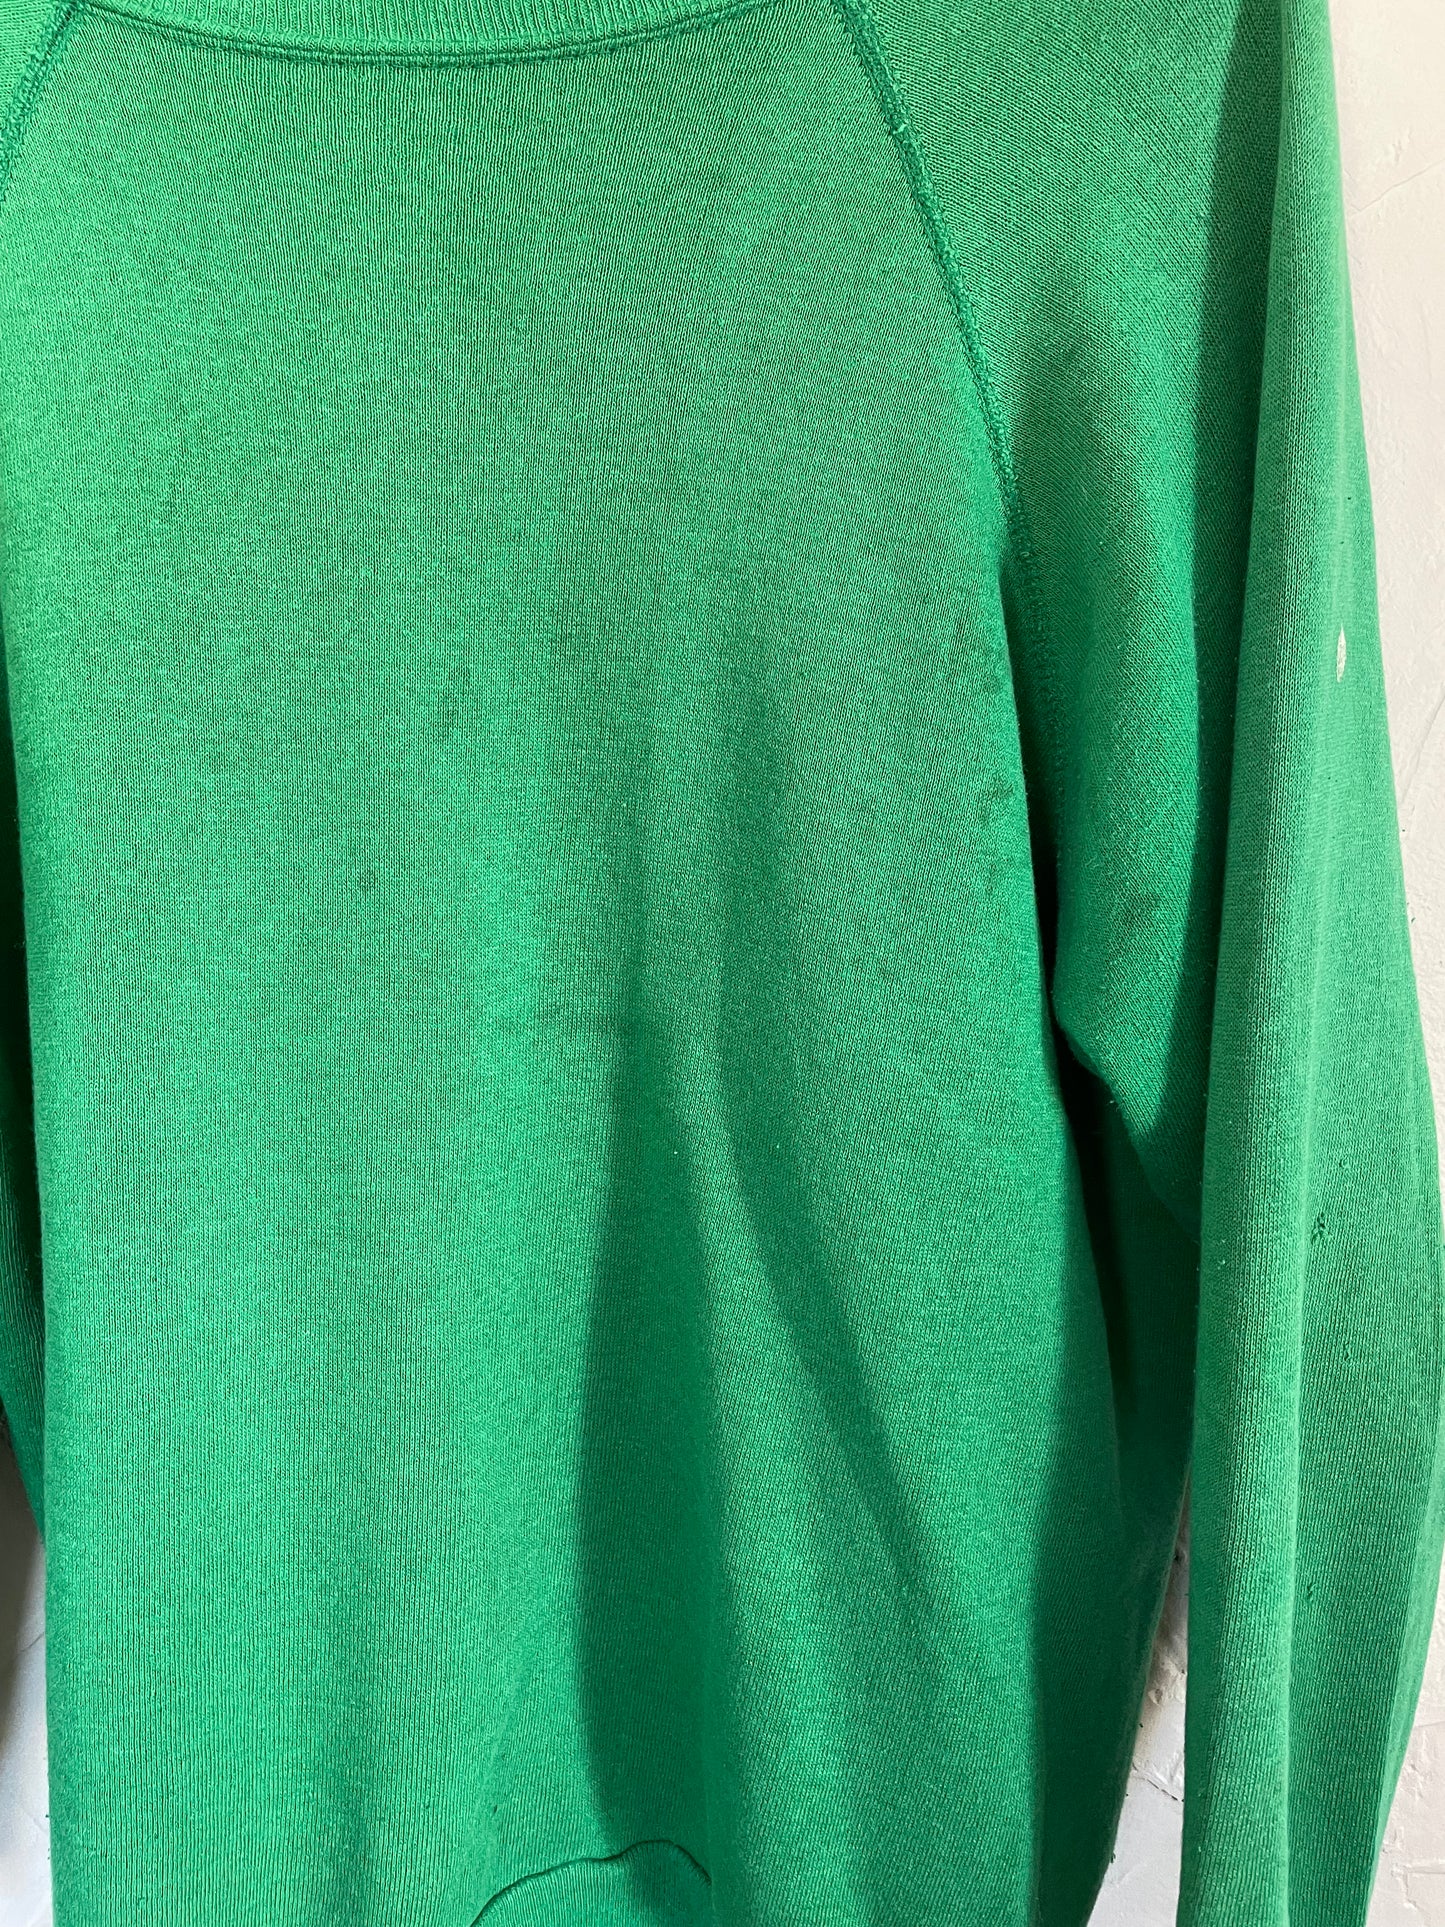 80s Blank Kelly Green Sweatshirt